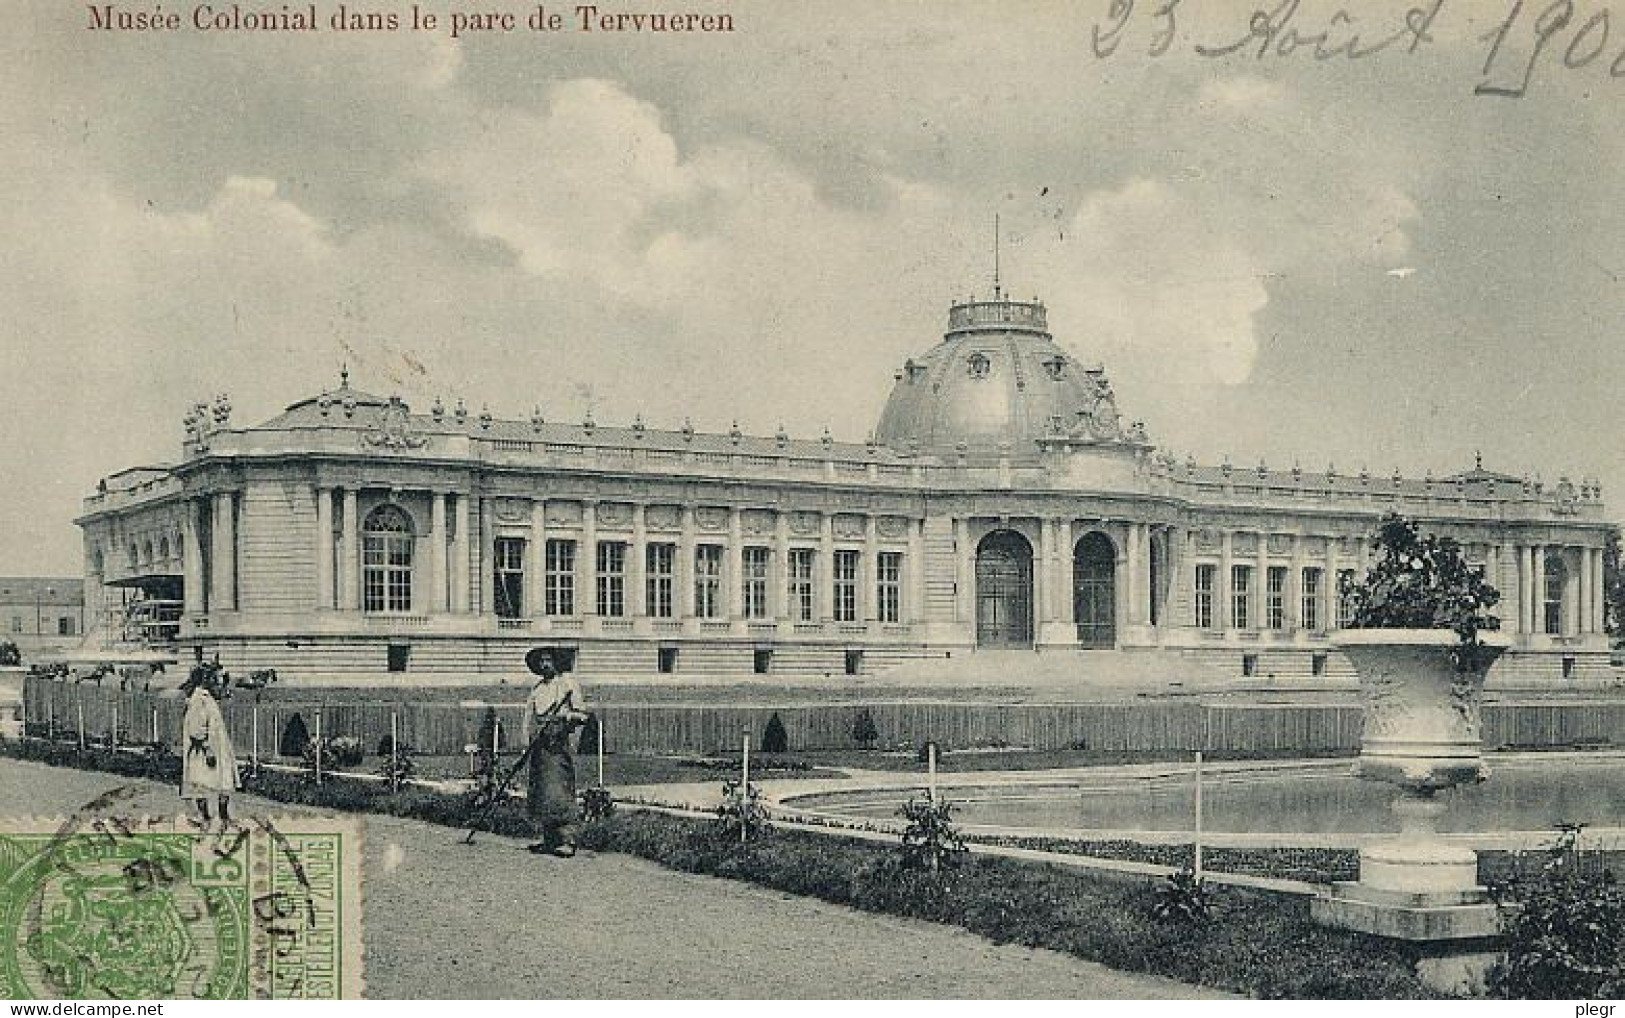 BEL04 01 02 - BRUXELLES / BRUSSEL - MUSEE COLONIAL DANS LE PARC DE TERVUEREN - Musées